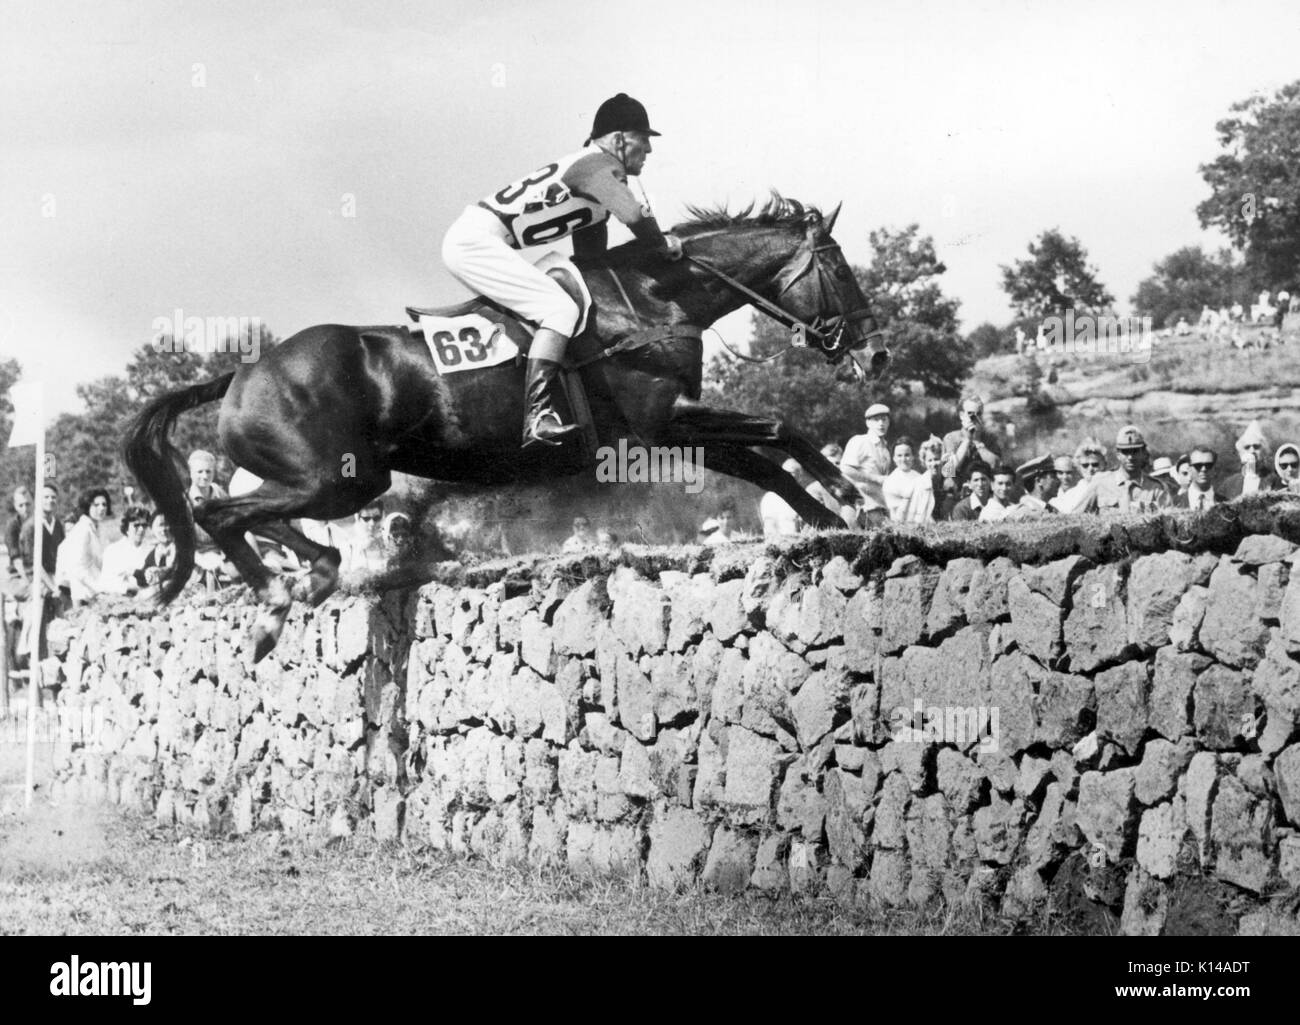 Olympische Spiele, Rom 1960 Lawrence RE. Morgan (AUS) springt Salat Tage über eine Mauer auf dem Weg zu der dreitägigen Veranstaltung gold meadllist Stockfoto